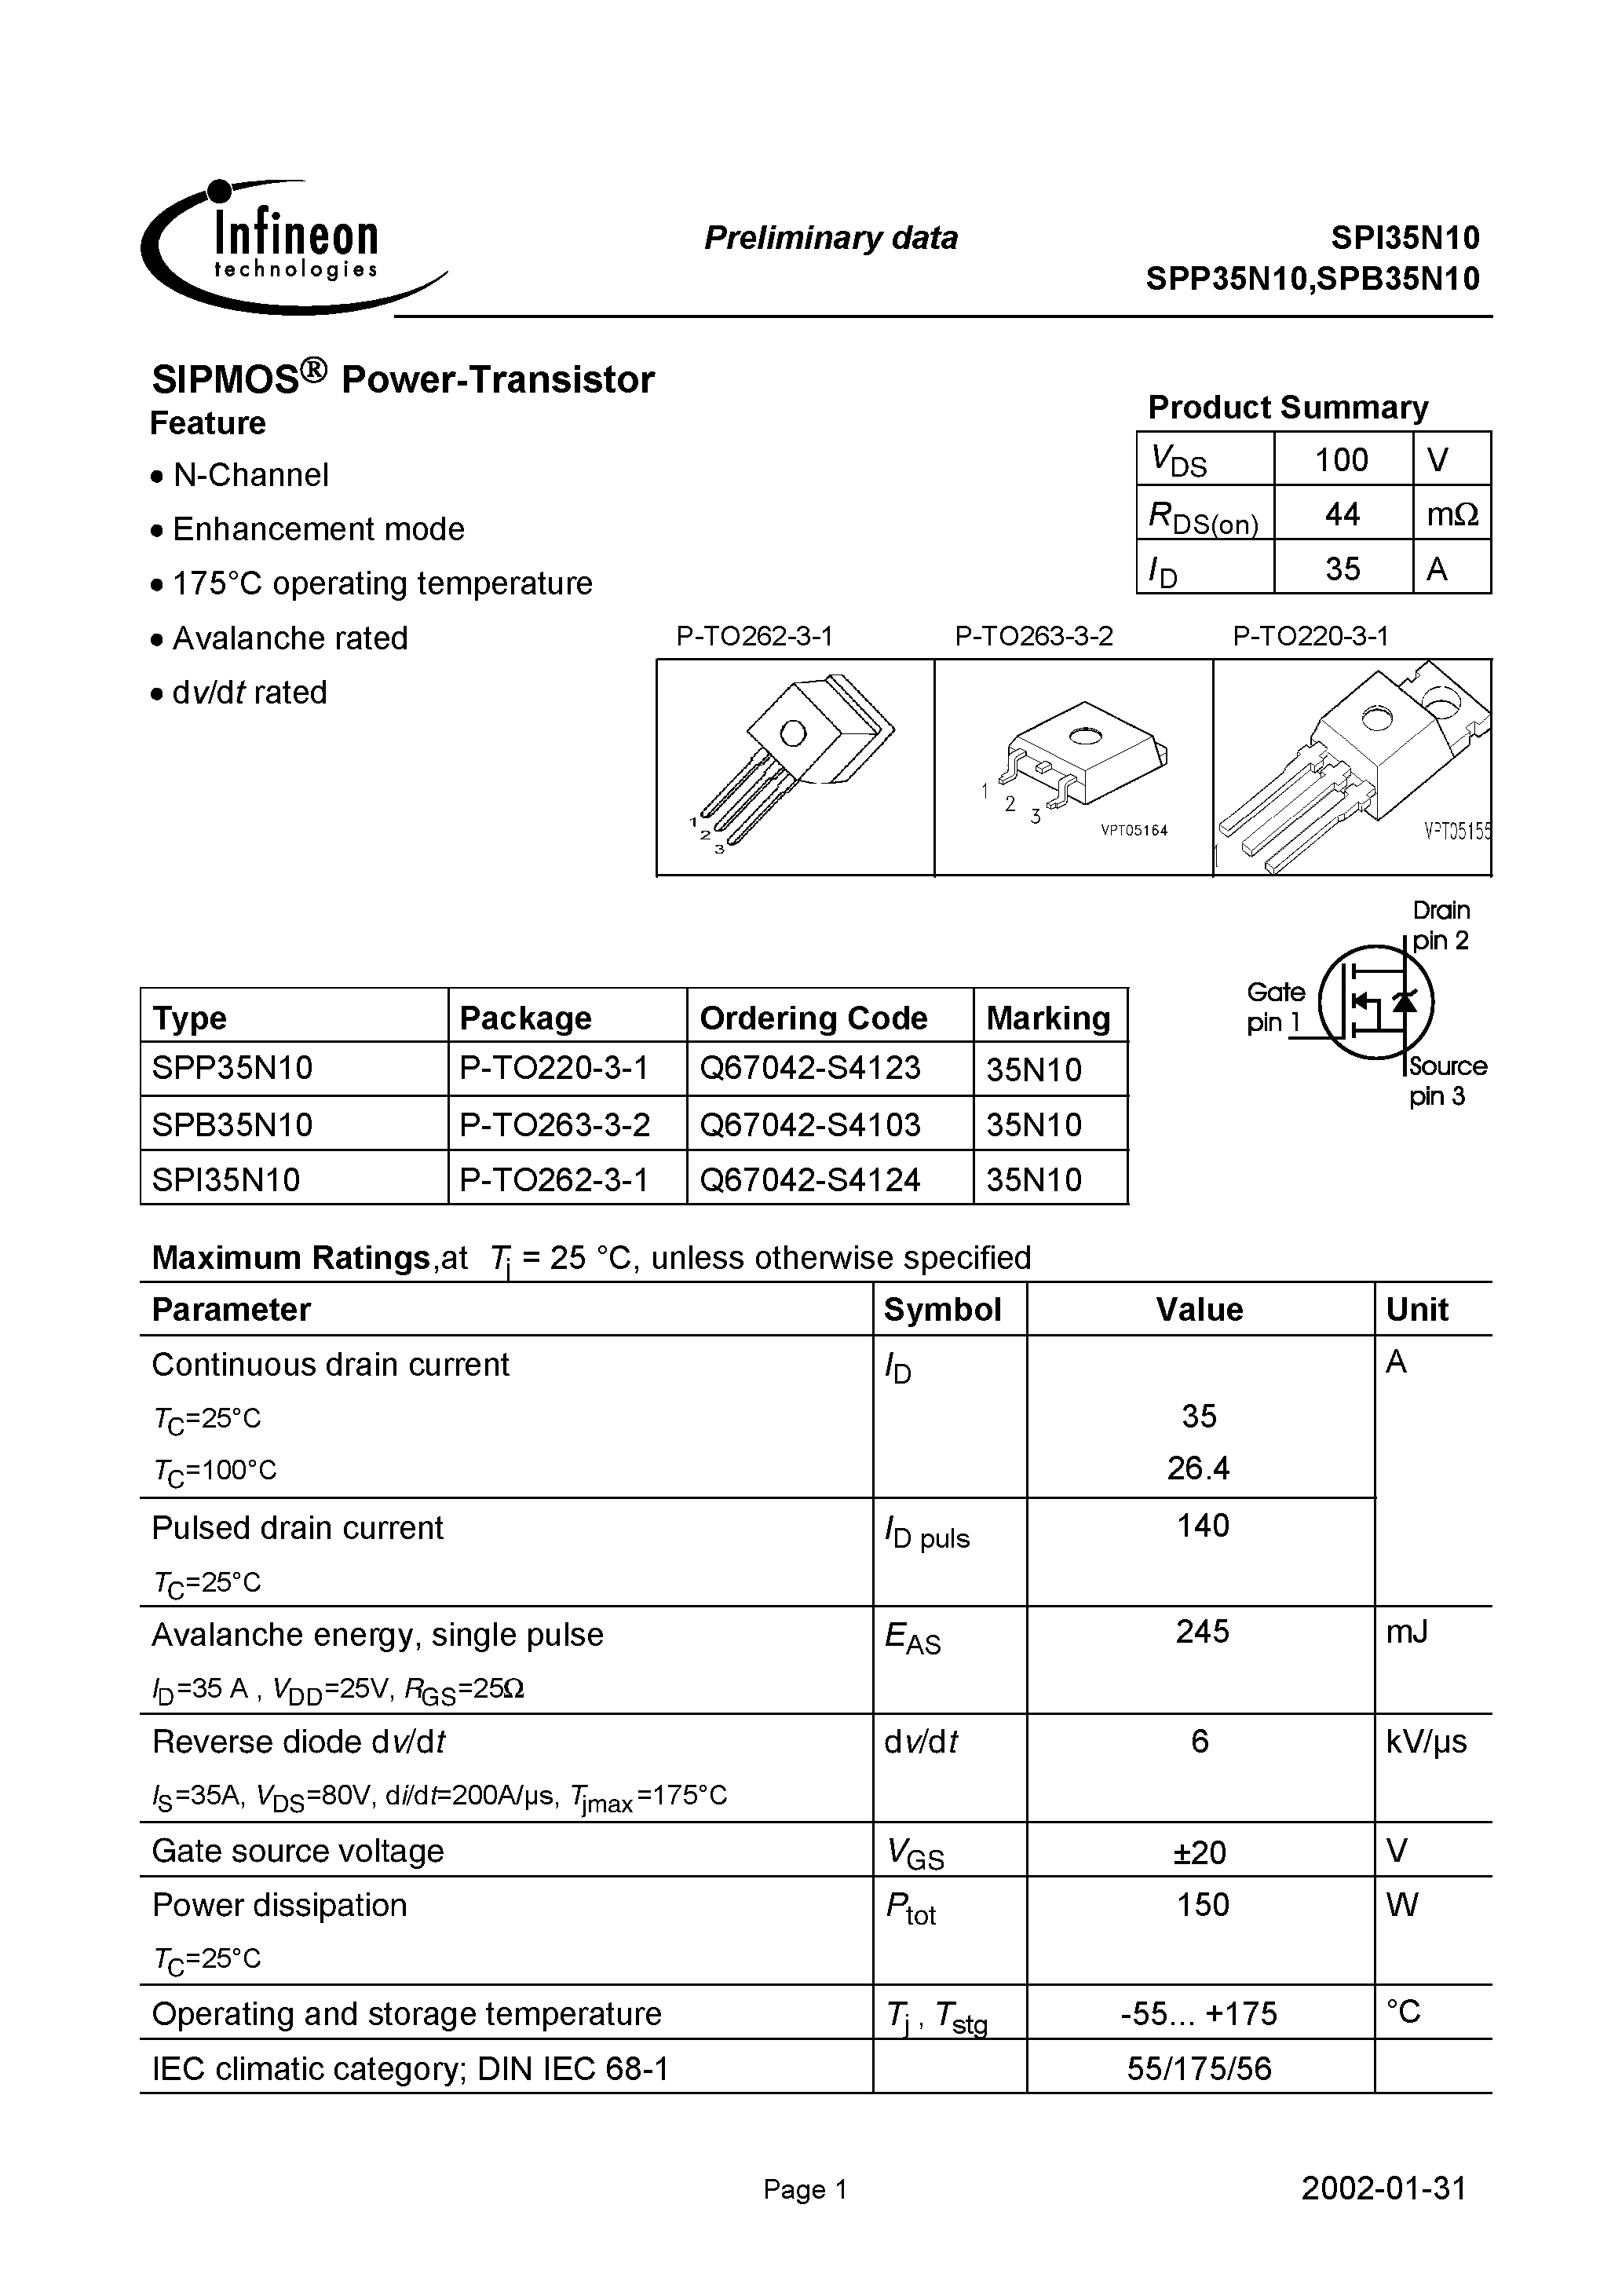 Datasheet SPI35N10 - SIPMOS Power-Transistor page 1